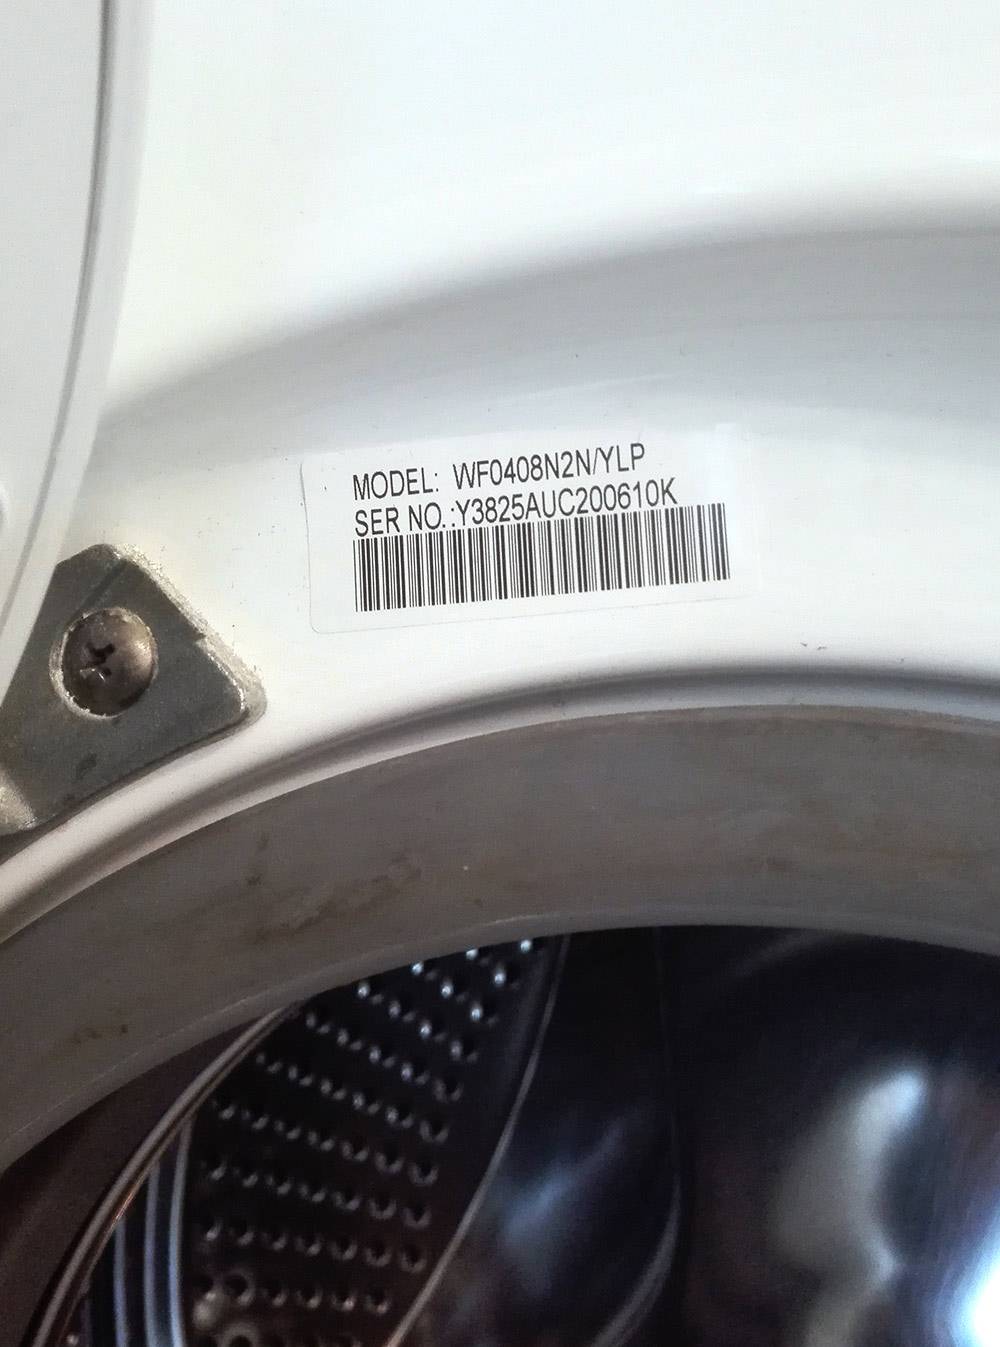 Наклейка на стиральной машине «Самсунг»: модель — WF0408N2N/YLP, серийный номер — Y3825AUC2000610K. Такие наклейки еще называют шильдиками